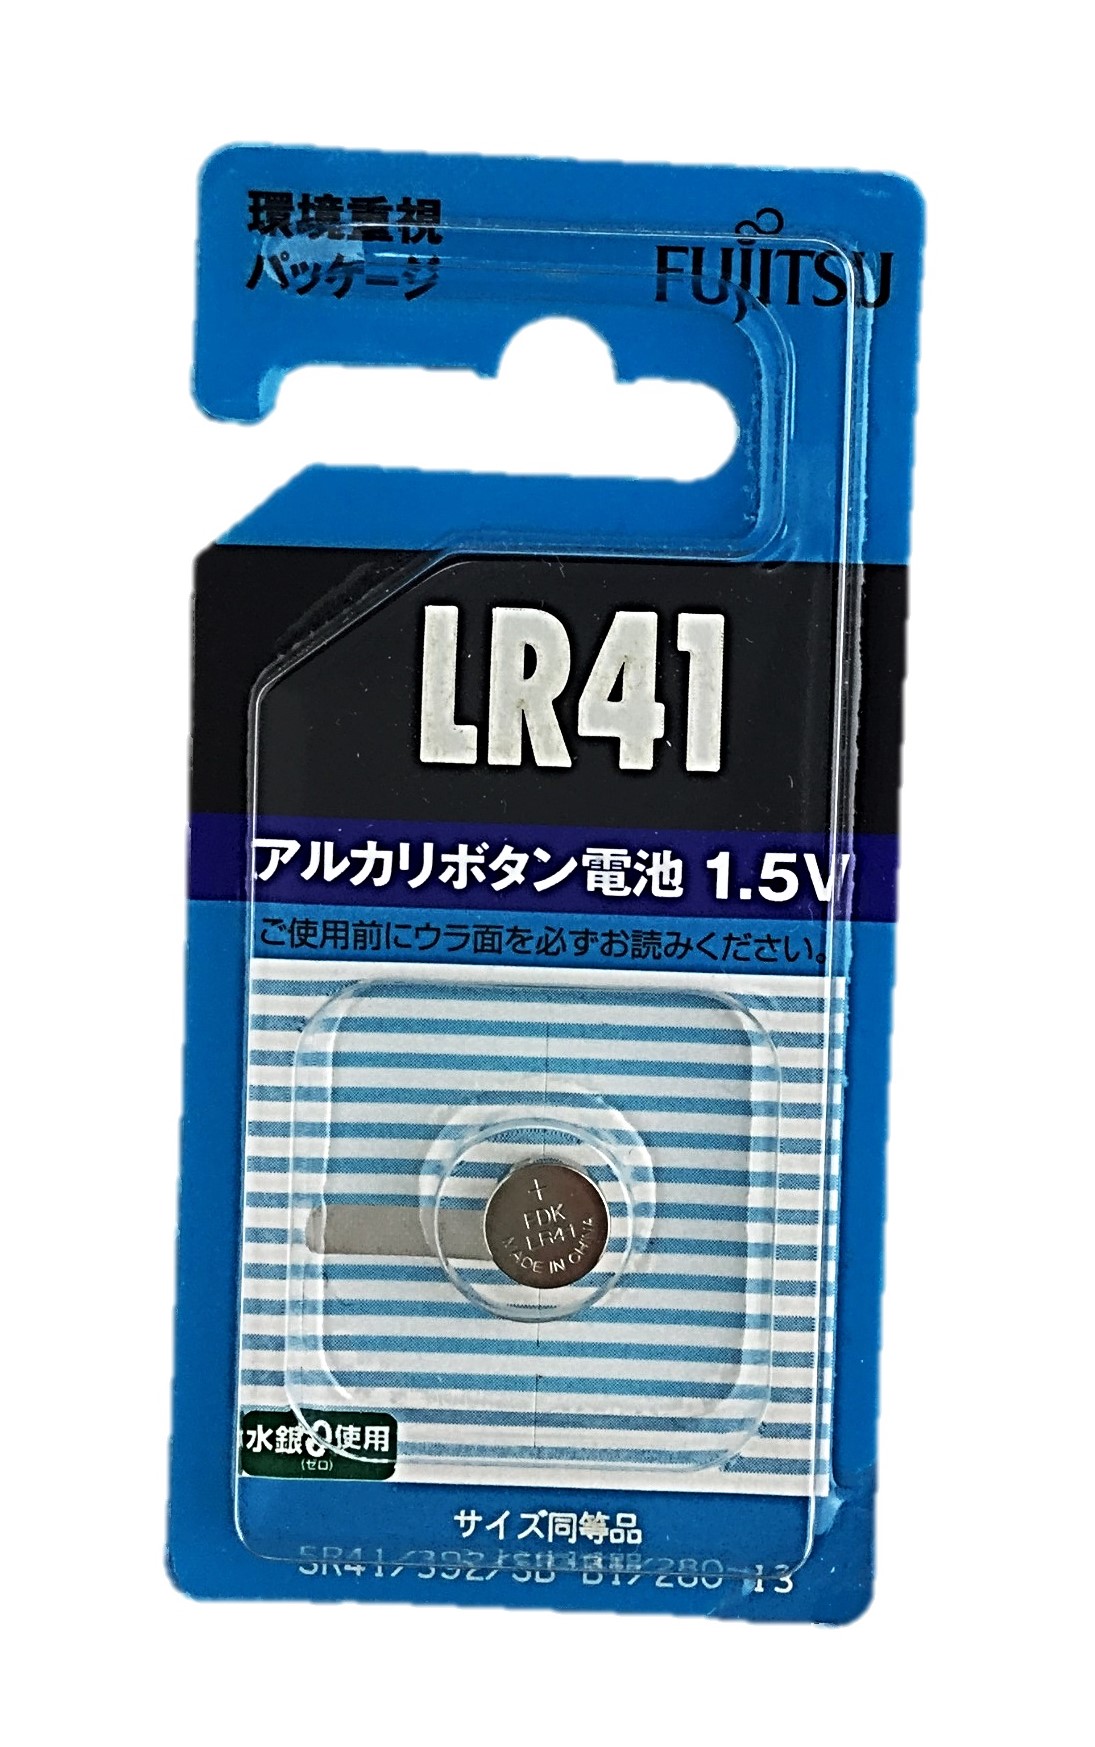 アルカリボタン電池LR41C(B)N1個